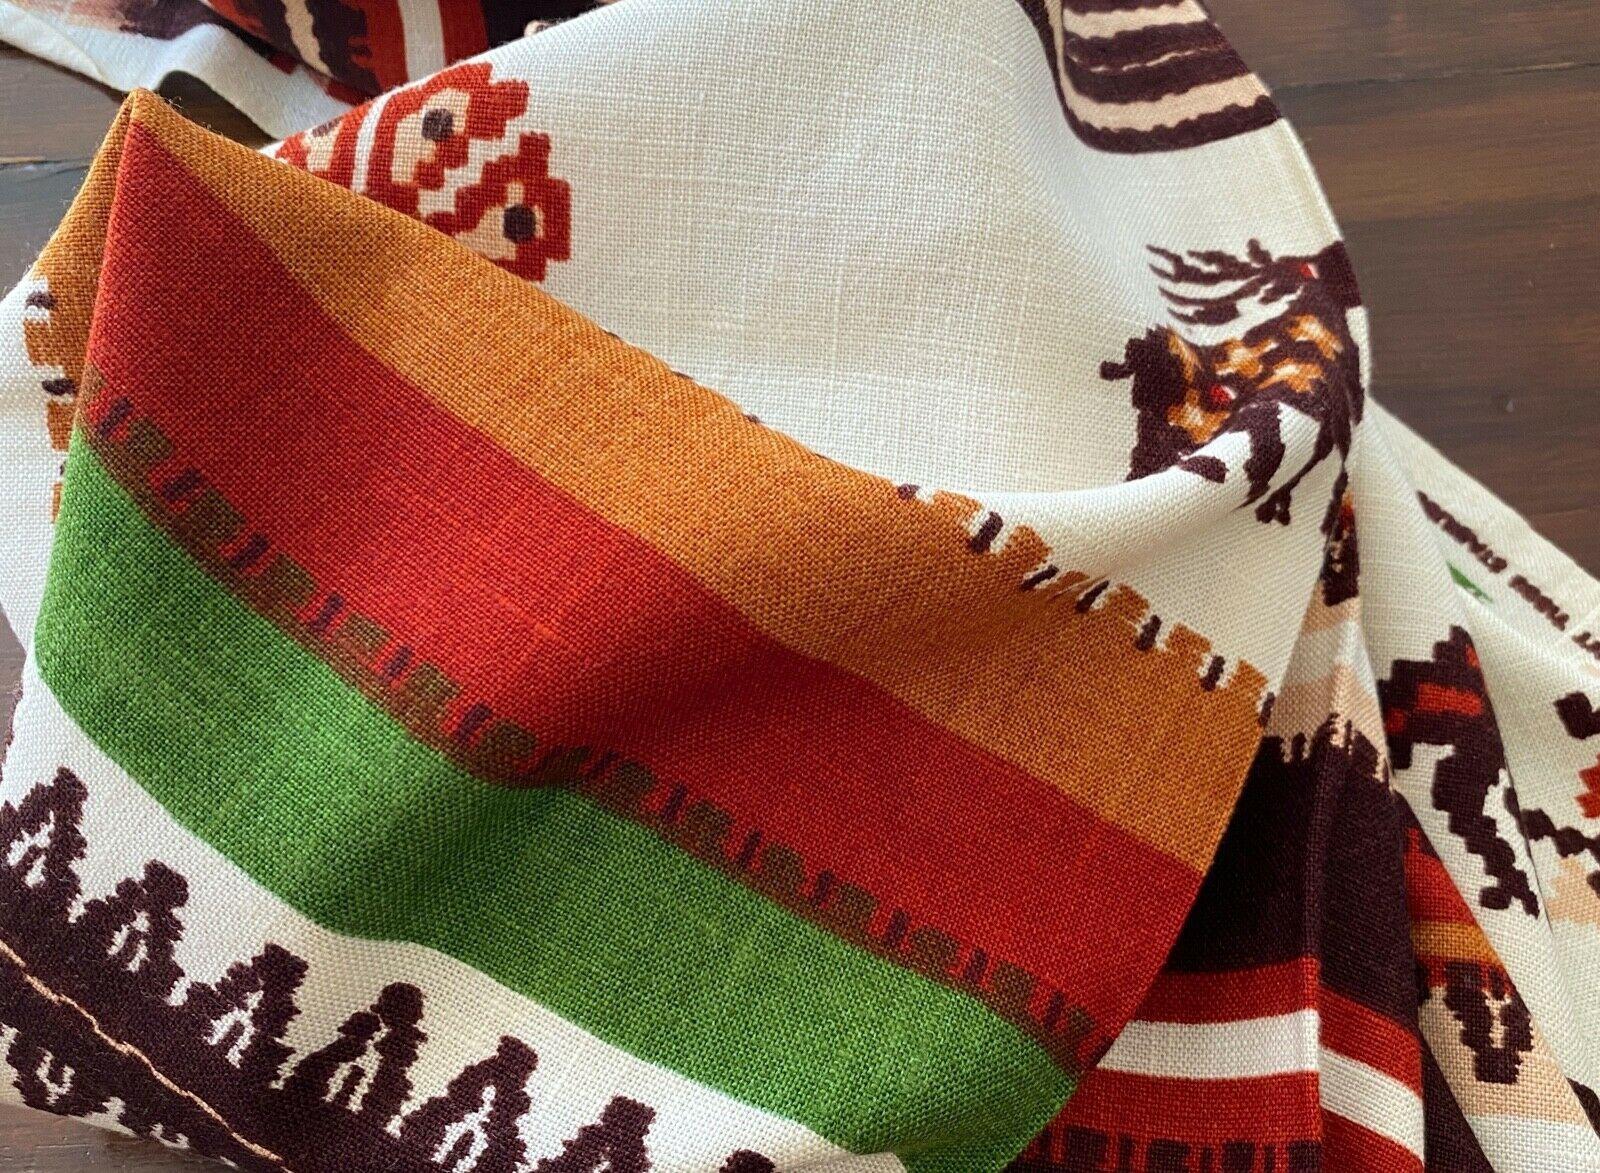 Boussac France Leinenmischung Dorado Textil, Rot, Weiß, Grün, Braun, 1970er Jahre. Ungefähr vier laufende Meter eines reizvollen Drucks auf weichem Leinen von Boussac. Es ist wunderschön drapiert und die Farben sind hell und schön. Der Zustand ist